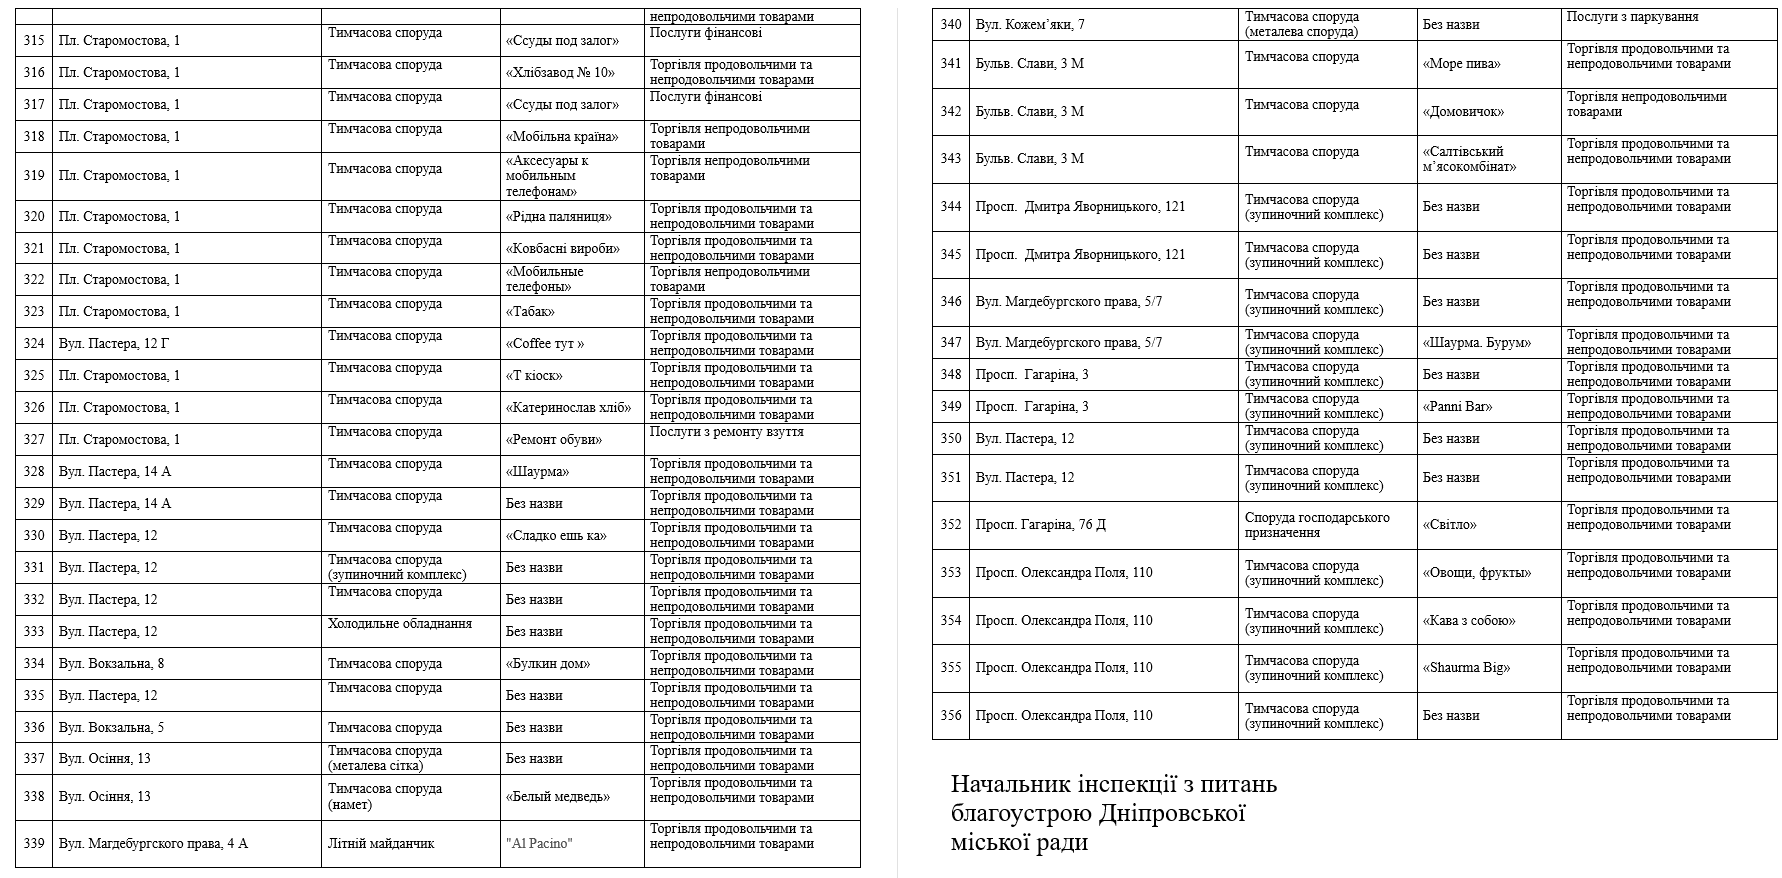 В Днепре снесут 356 МАФов: список адресов - рис. 7